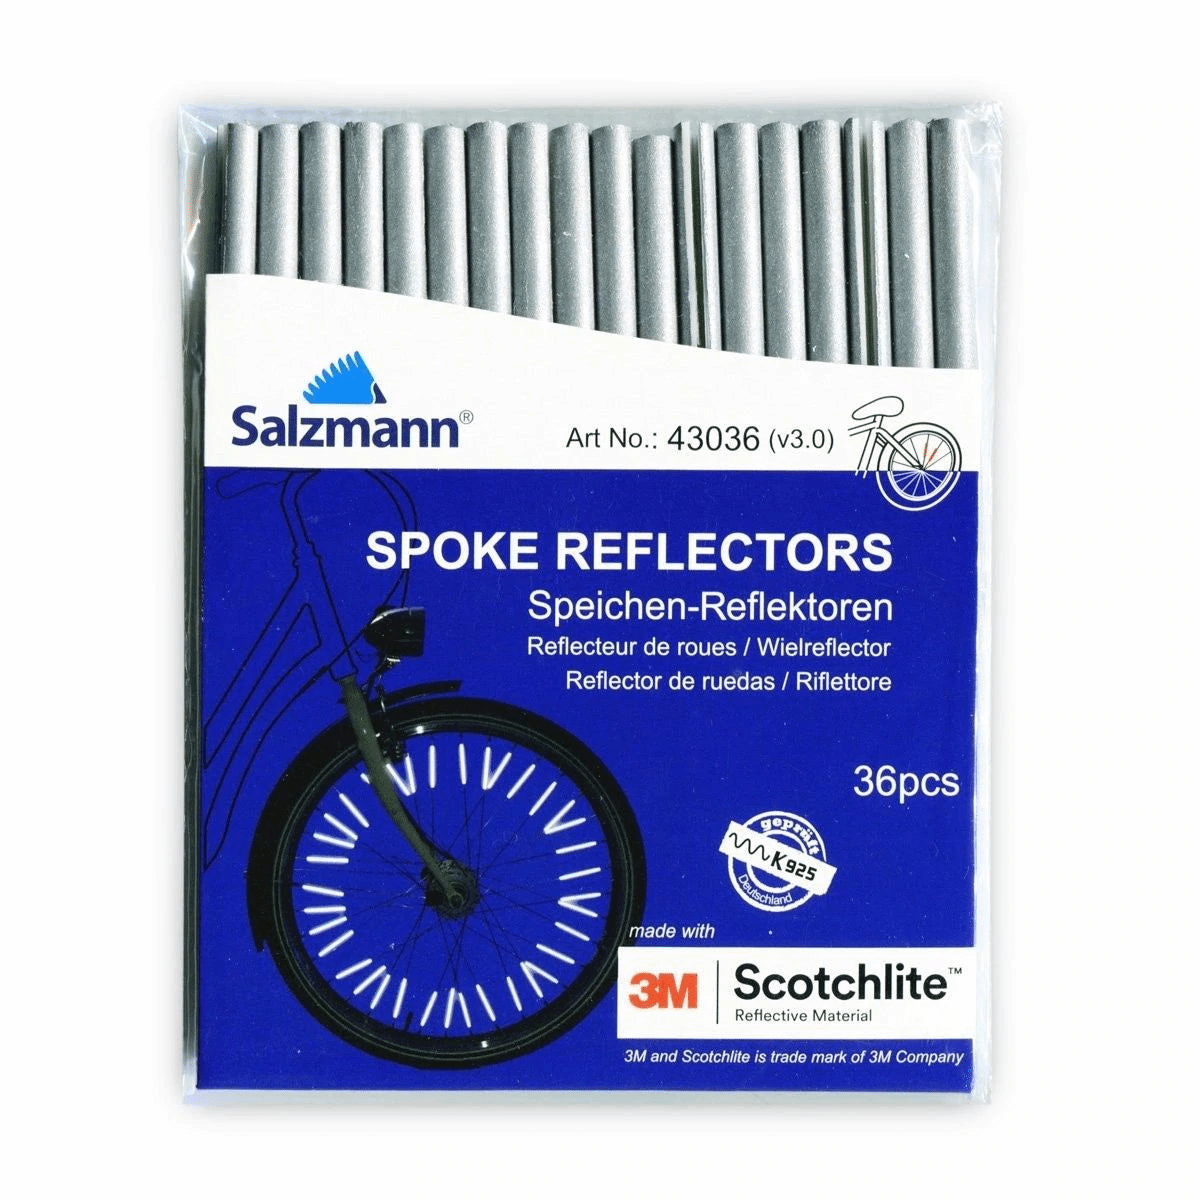 Salzmann Spoke Reflectors